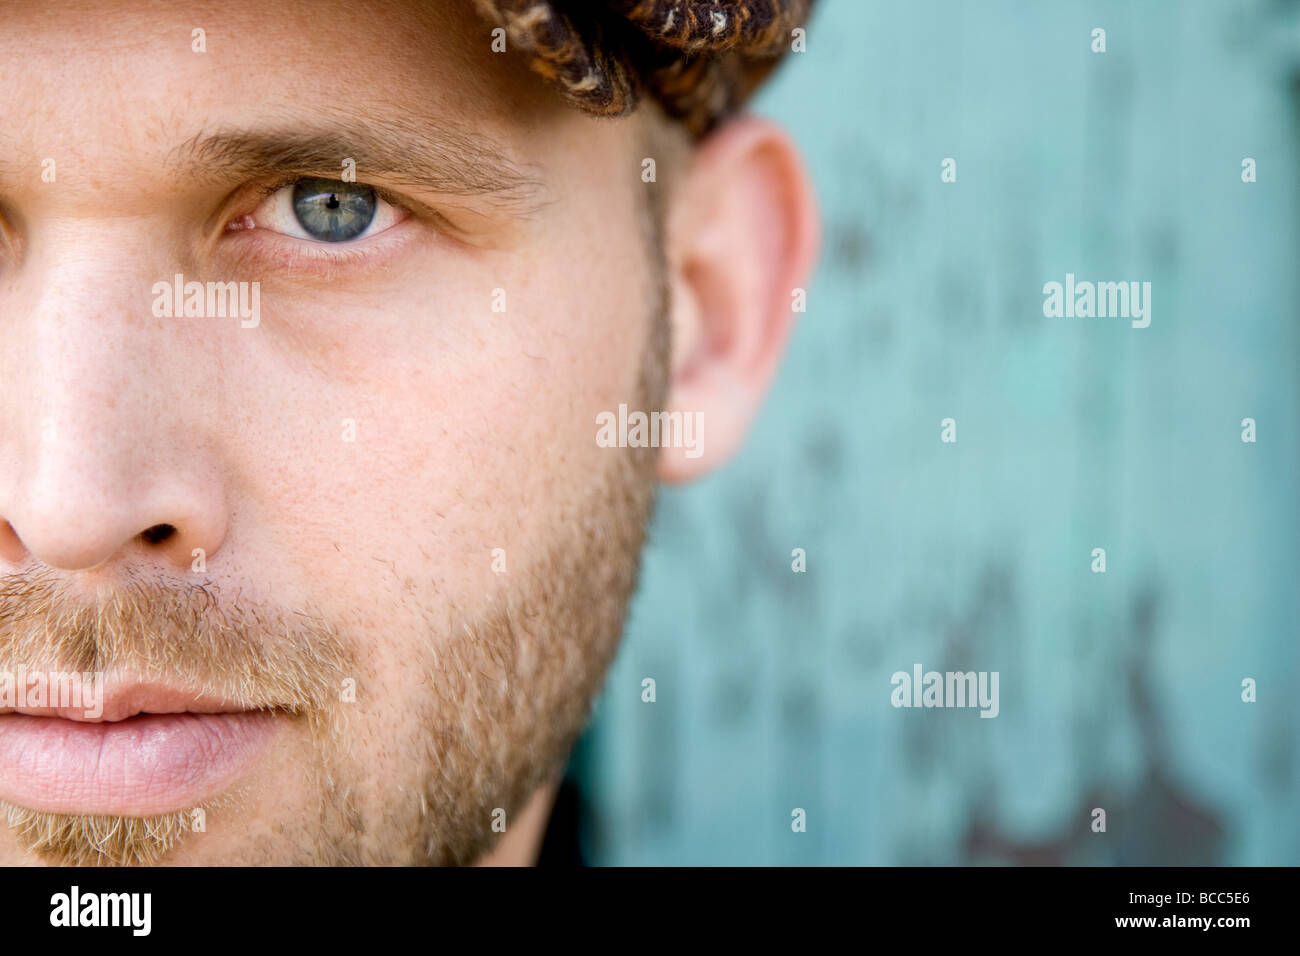 Un retrato de un hombre de ojos azules con una corta barba rubia